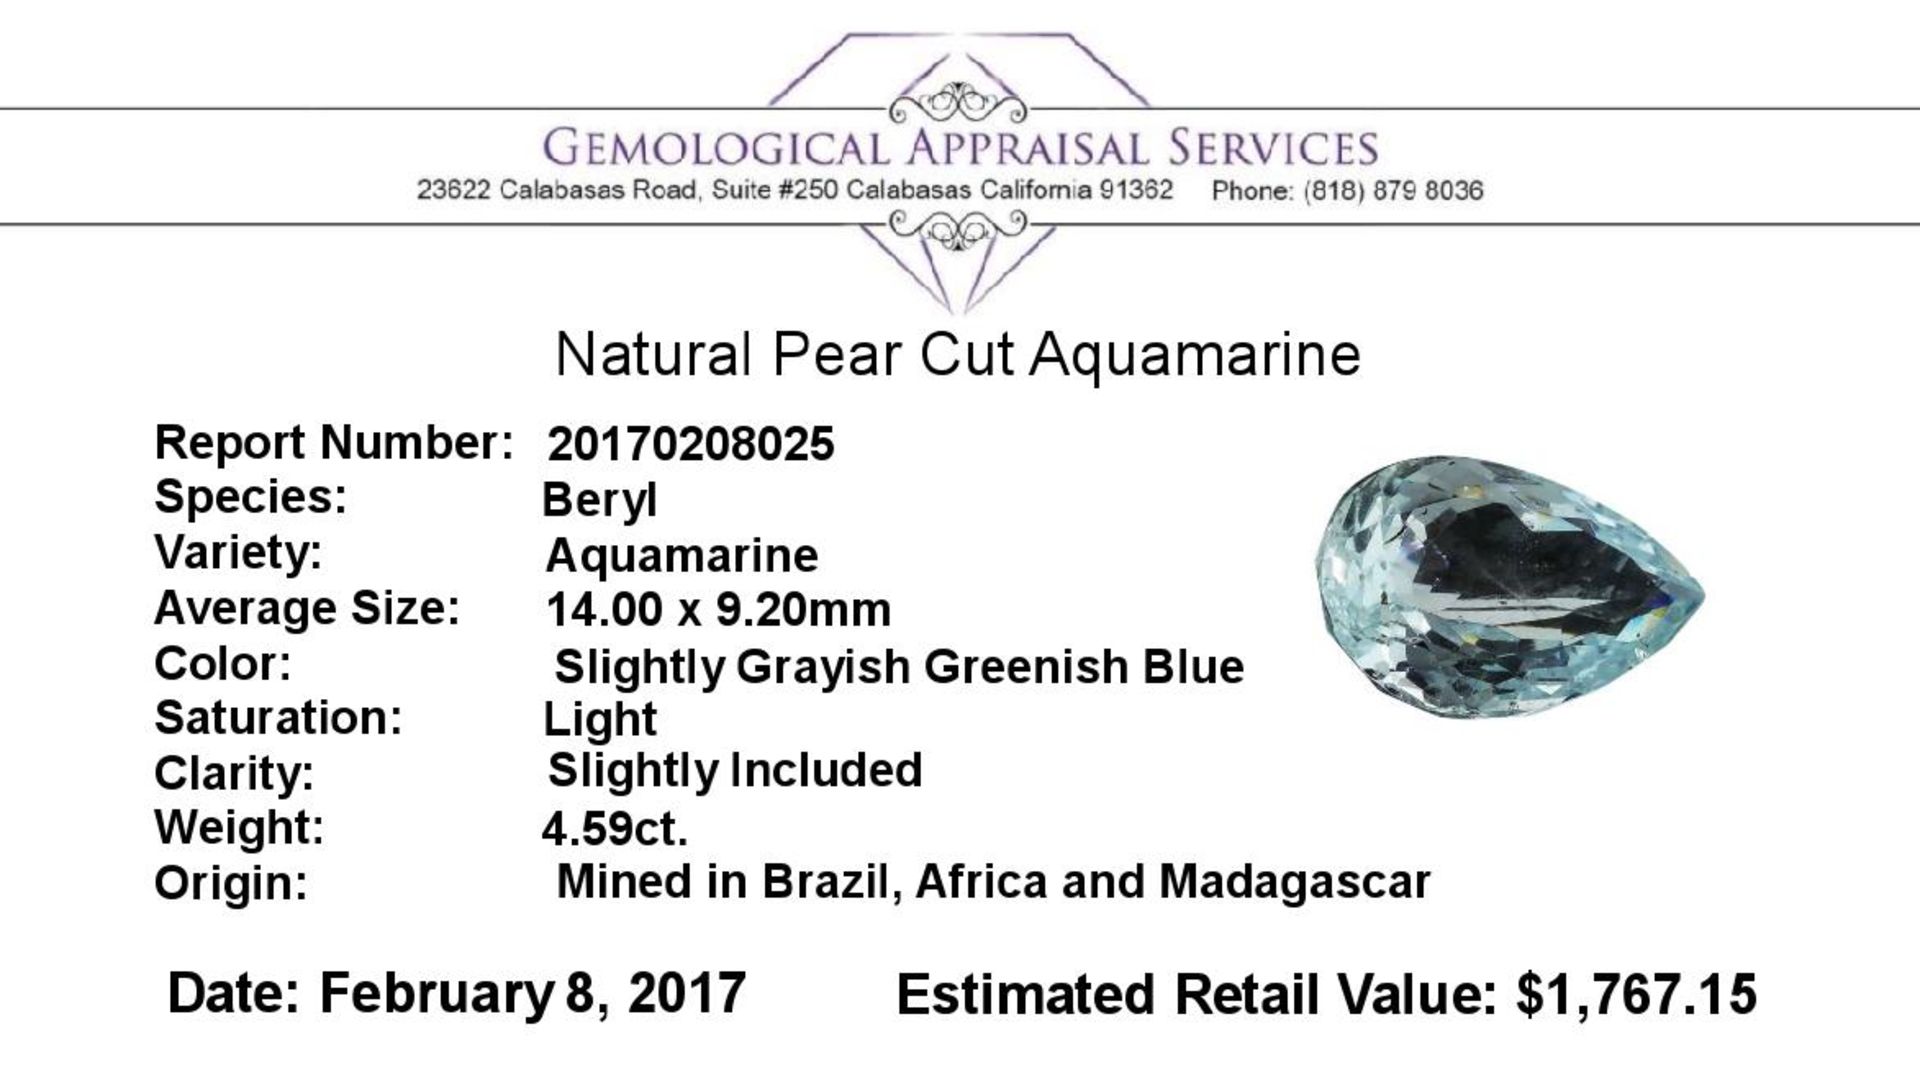 4.59 ct.Natural Pear Cut Aquamarine - Image 2 of 2